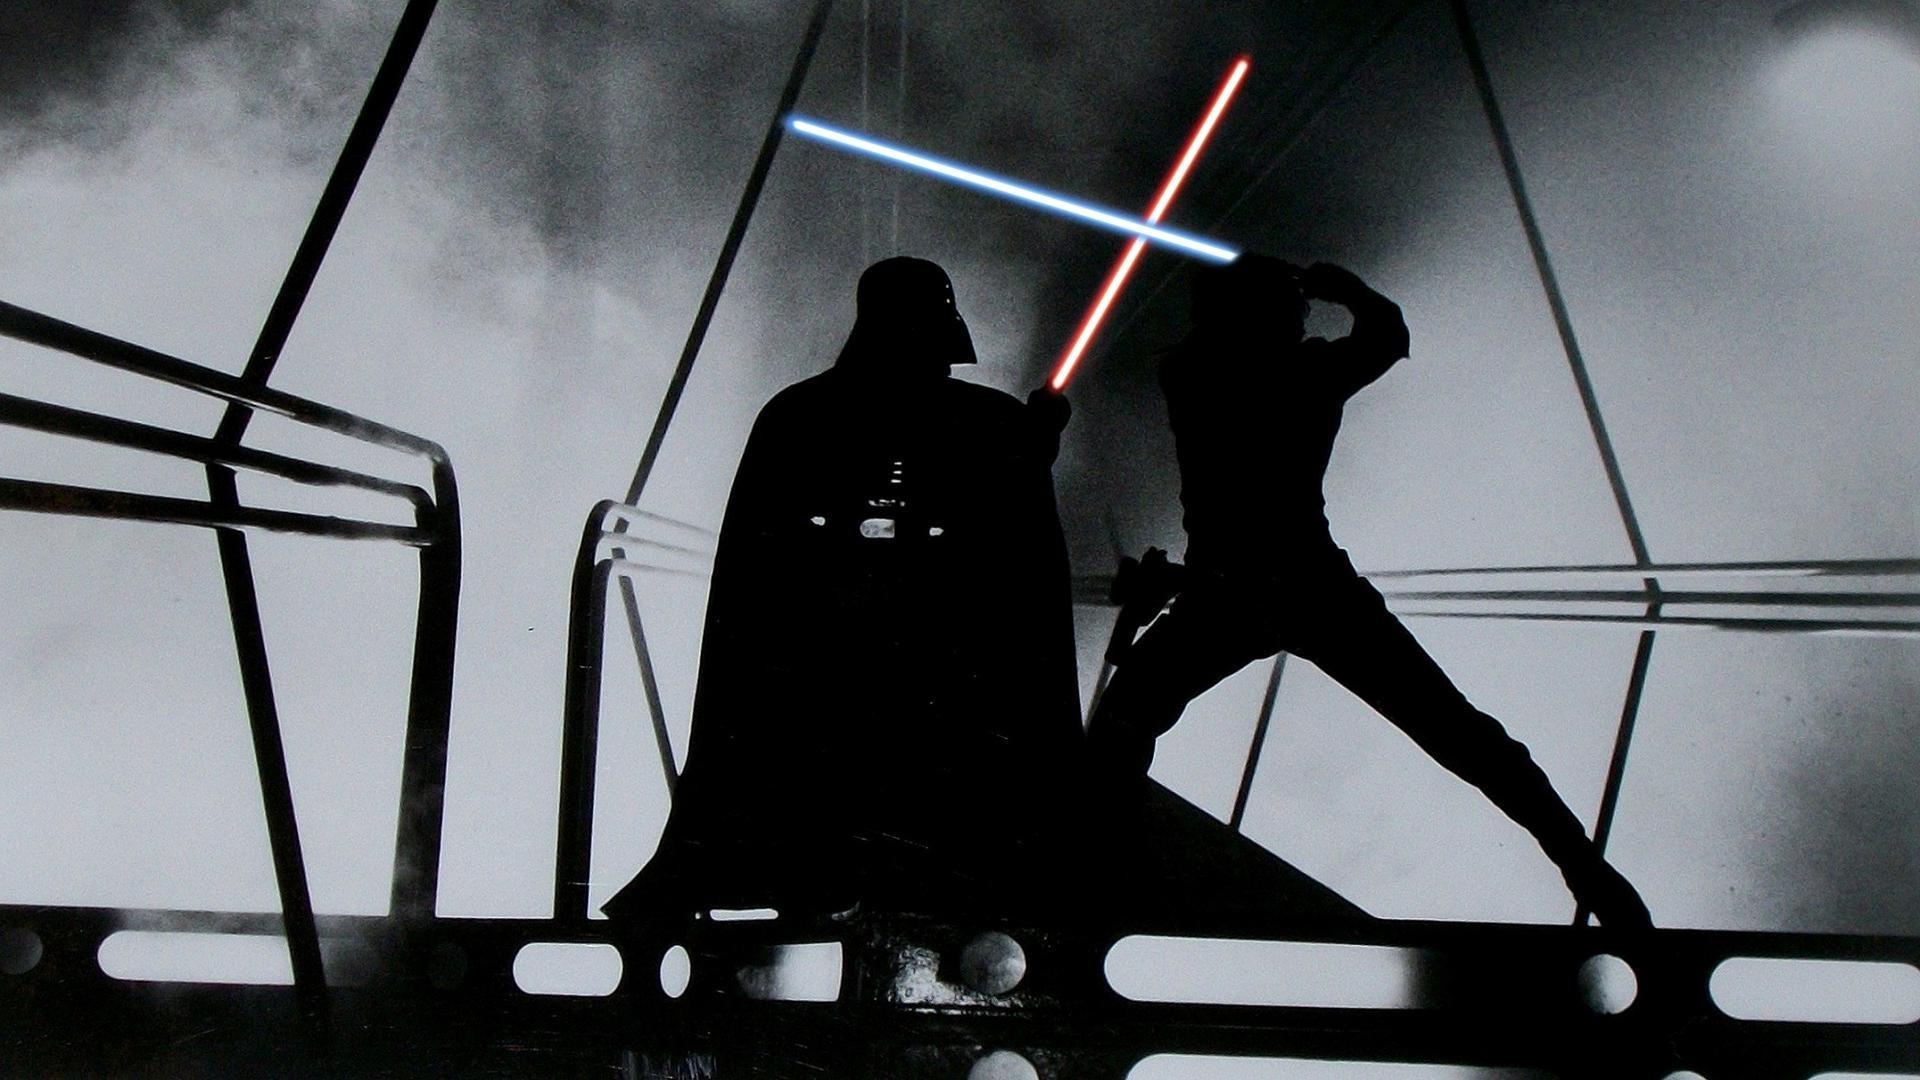 Luke Skywalker Vs Darth Vader Wallpapers - Wallpaper